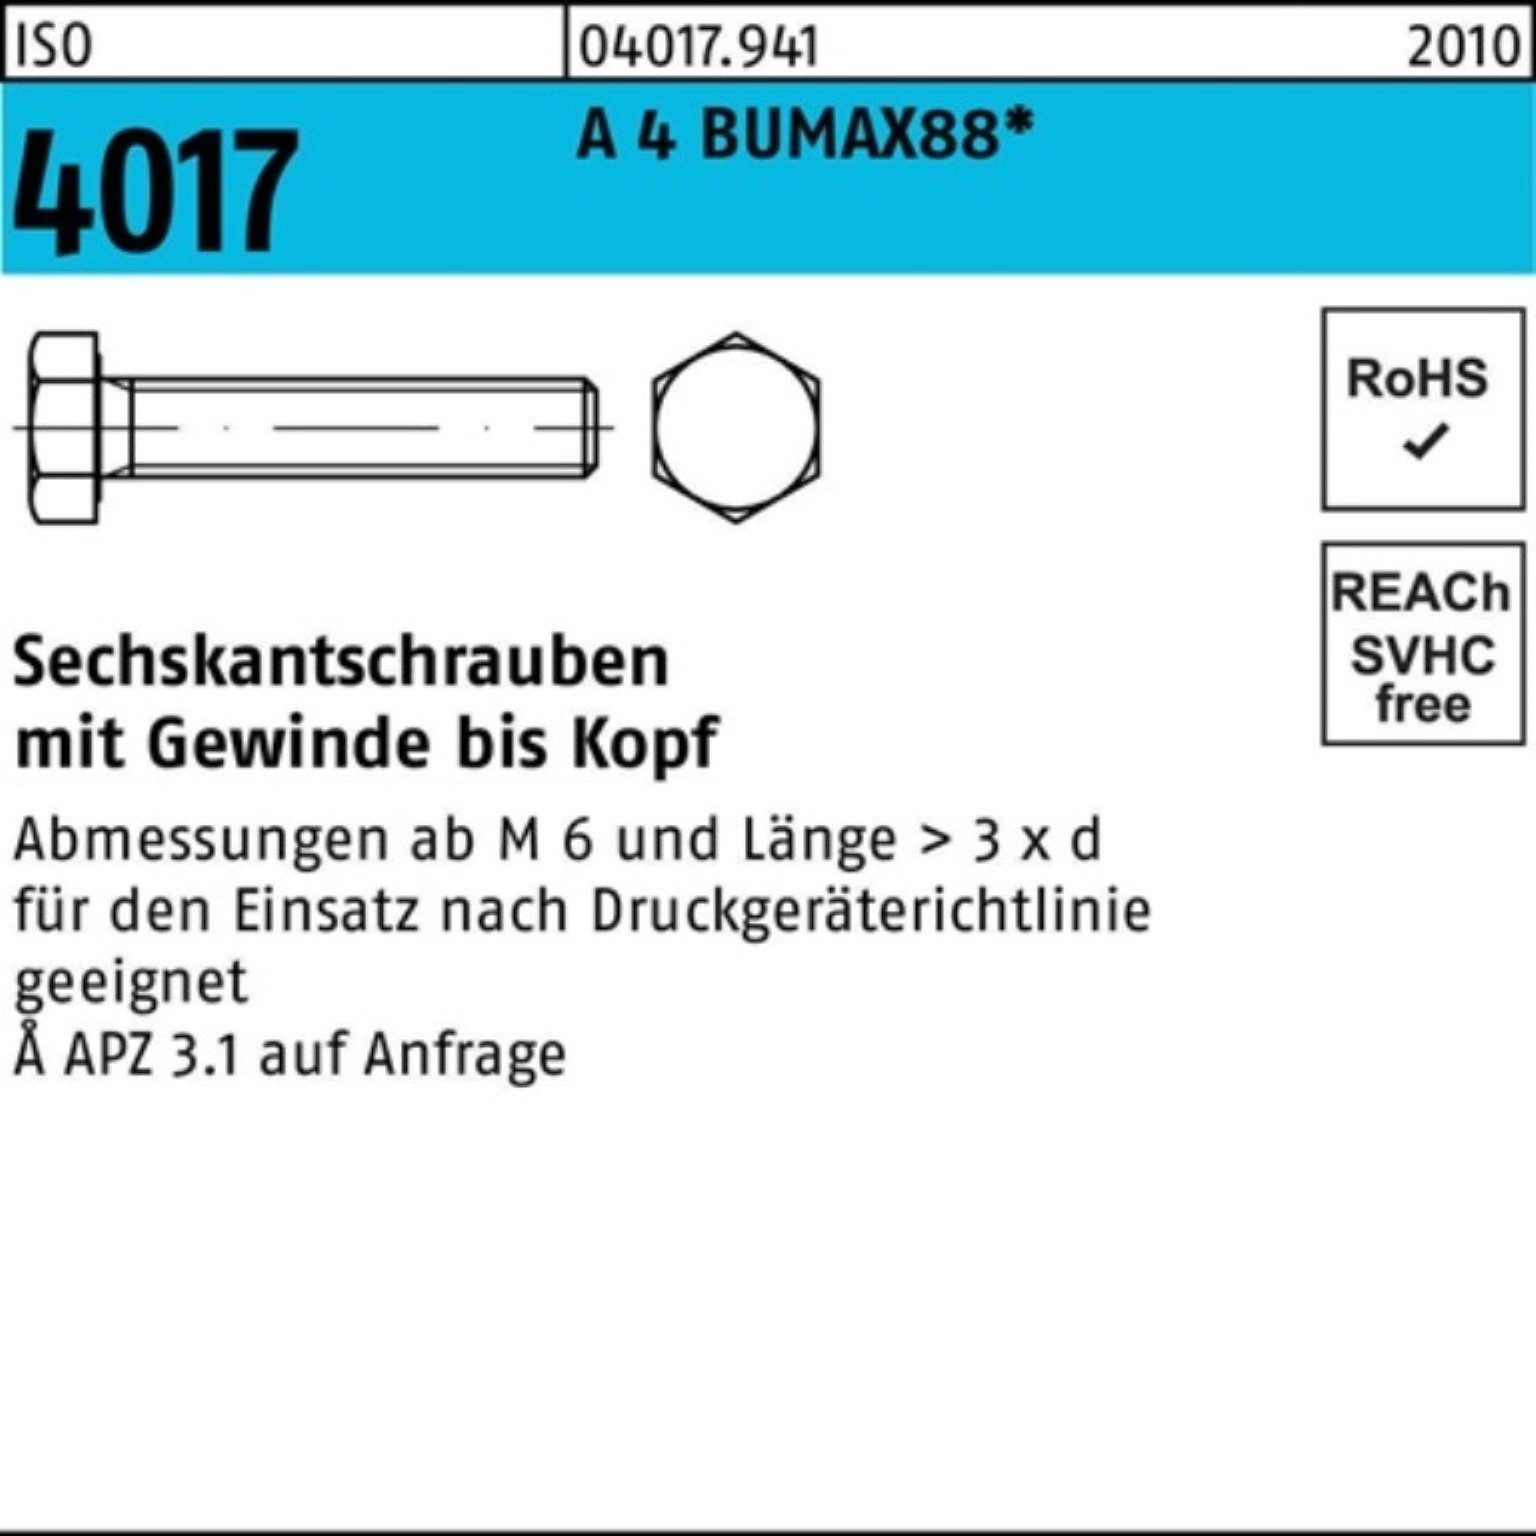 Bufab Sechskantschraube 100er Pack Sechskantschraube ISO 4017 VG M12x 30 A 4 BUMAX88 25 Stück